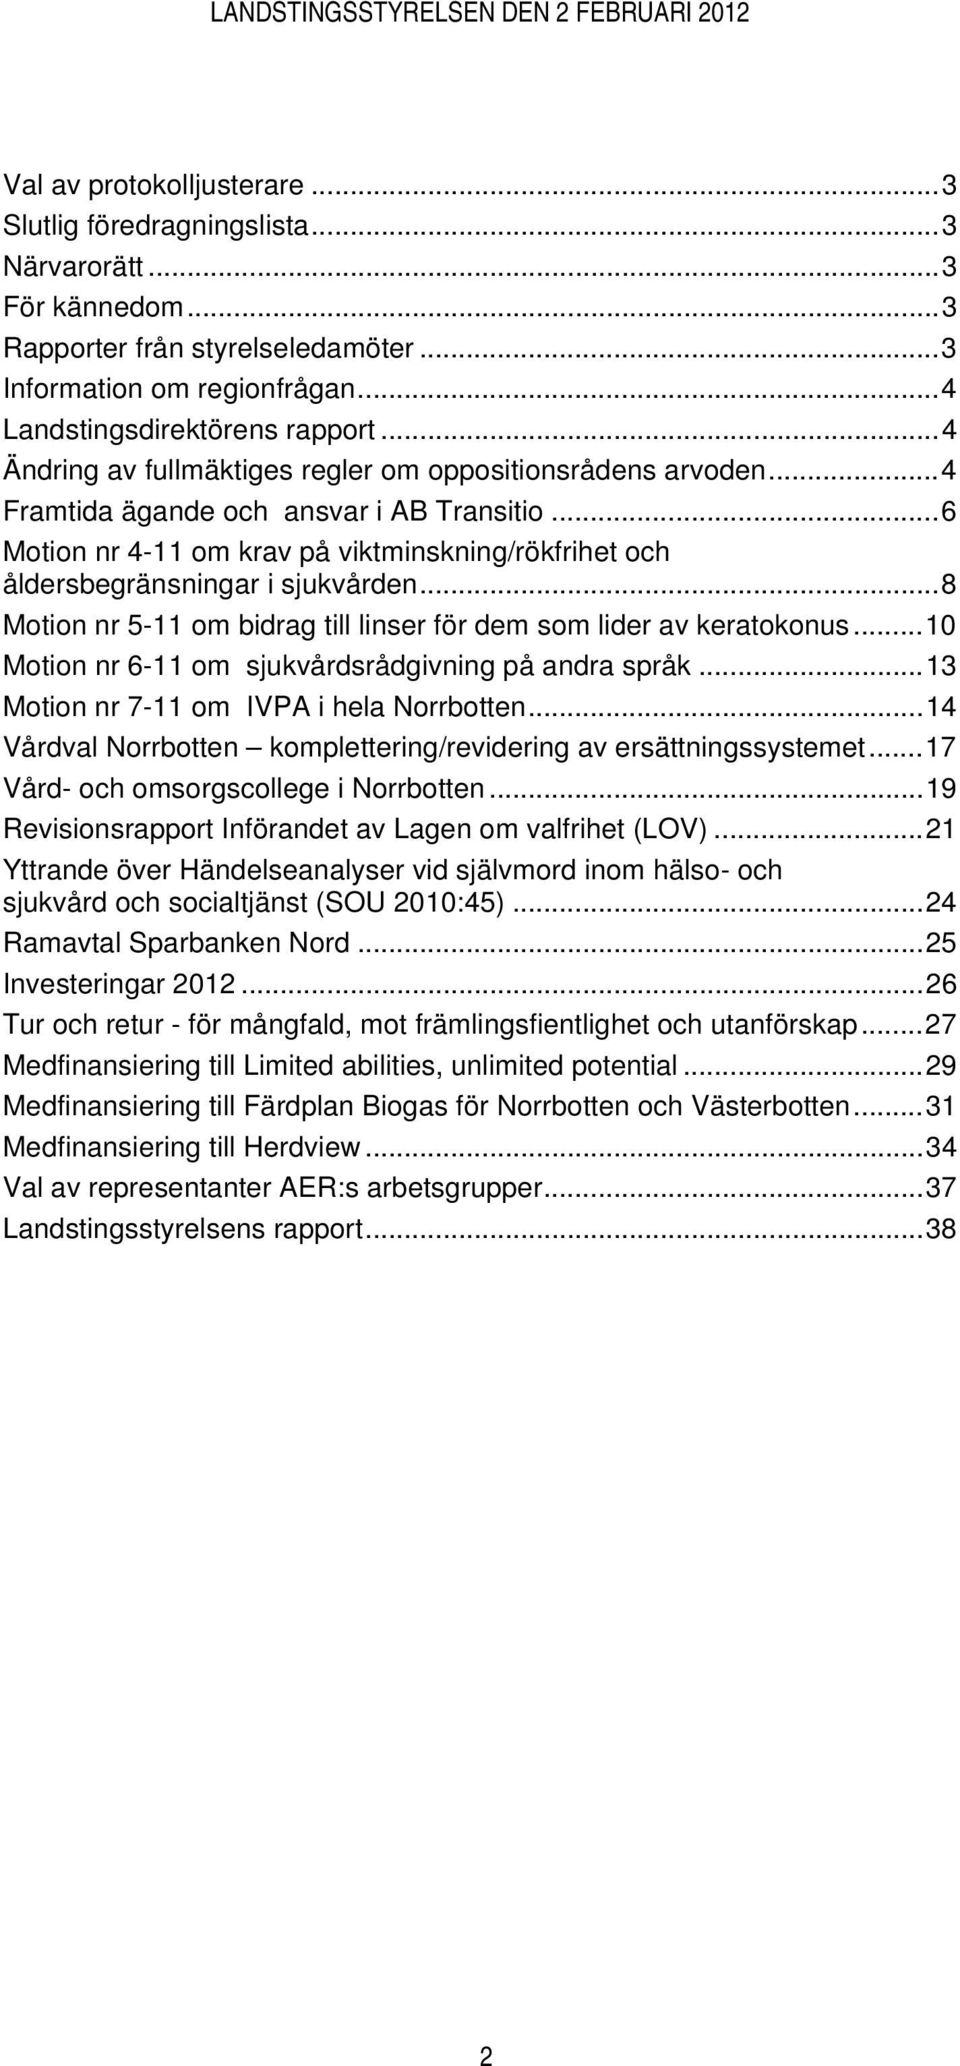 ..8 Motion nr 5-11 om bidrag till linser för dem som lider av keratokonus...10 Motion nr 6-11 om sjukvårdsrådgivning på andra språk...13 Motion nr 7-11 om IVPA i hela Norrbotten.